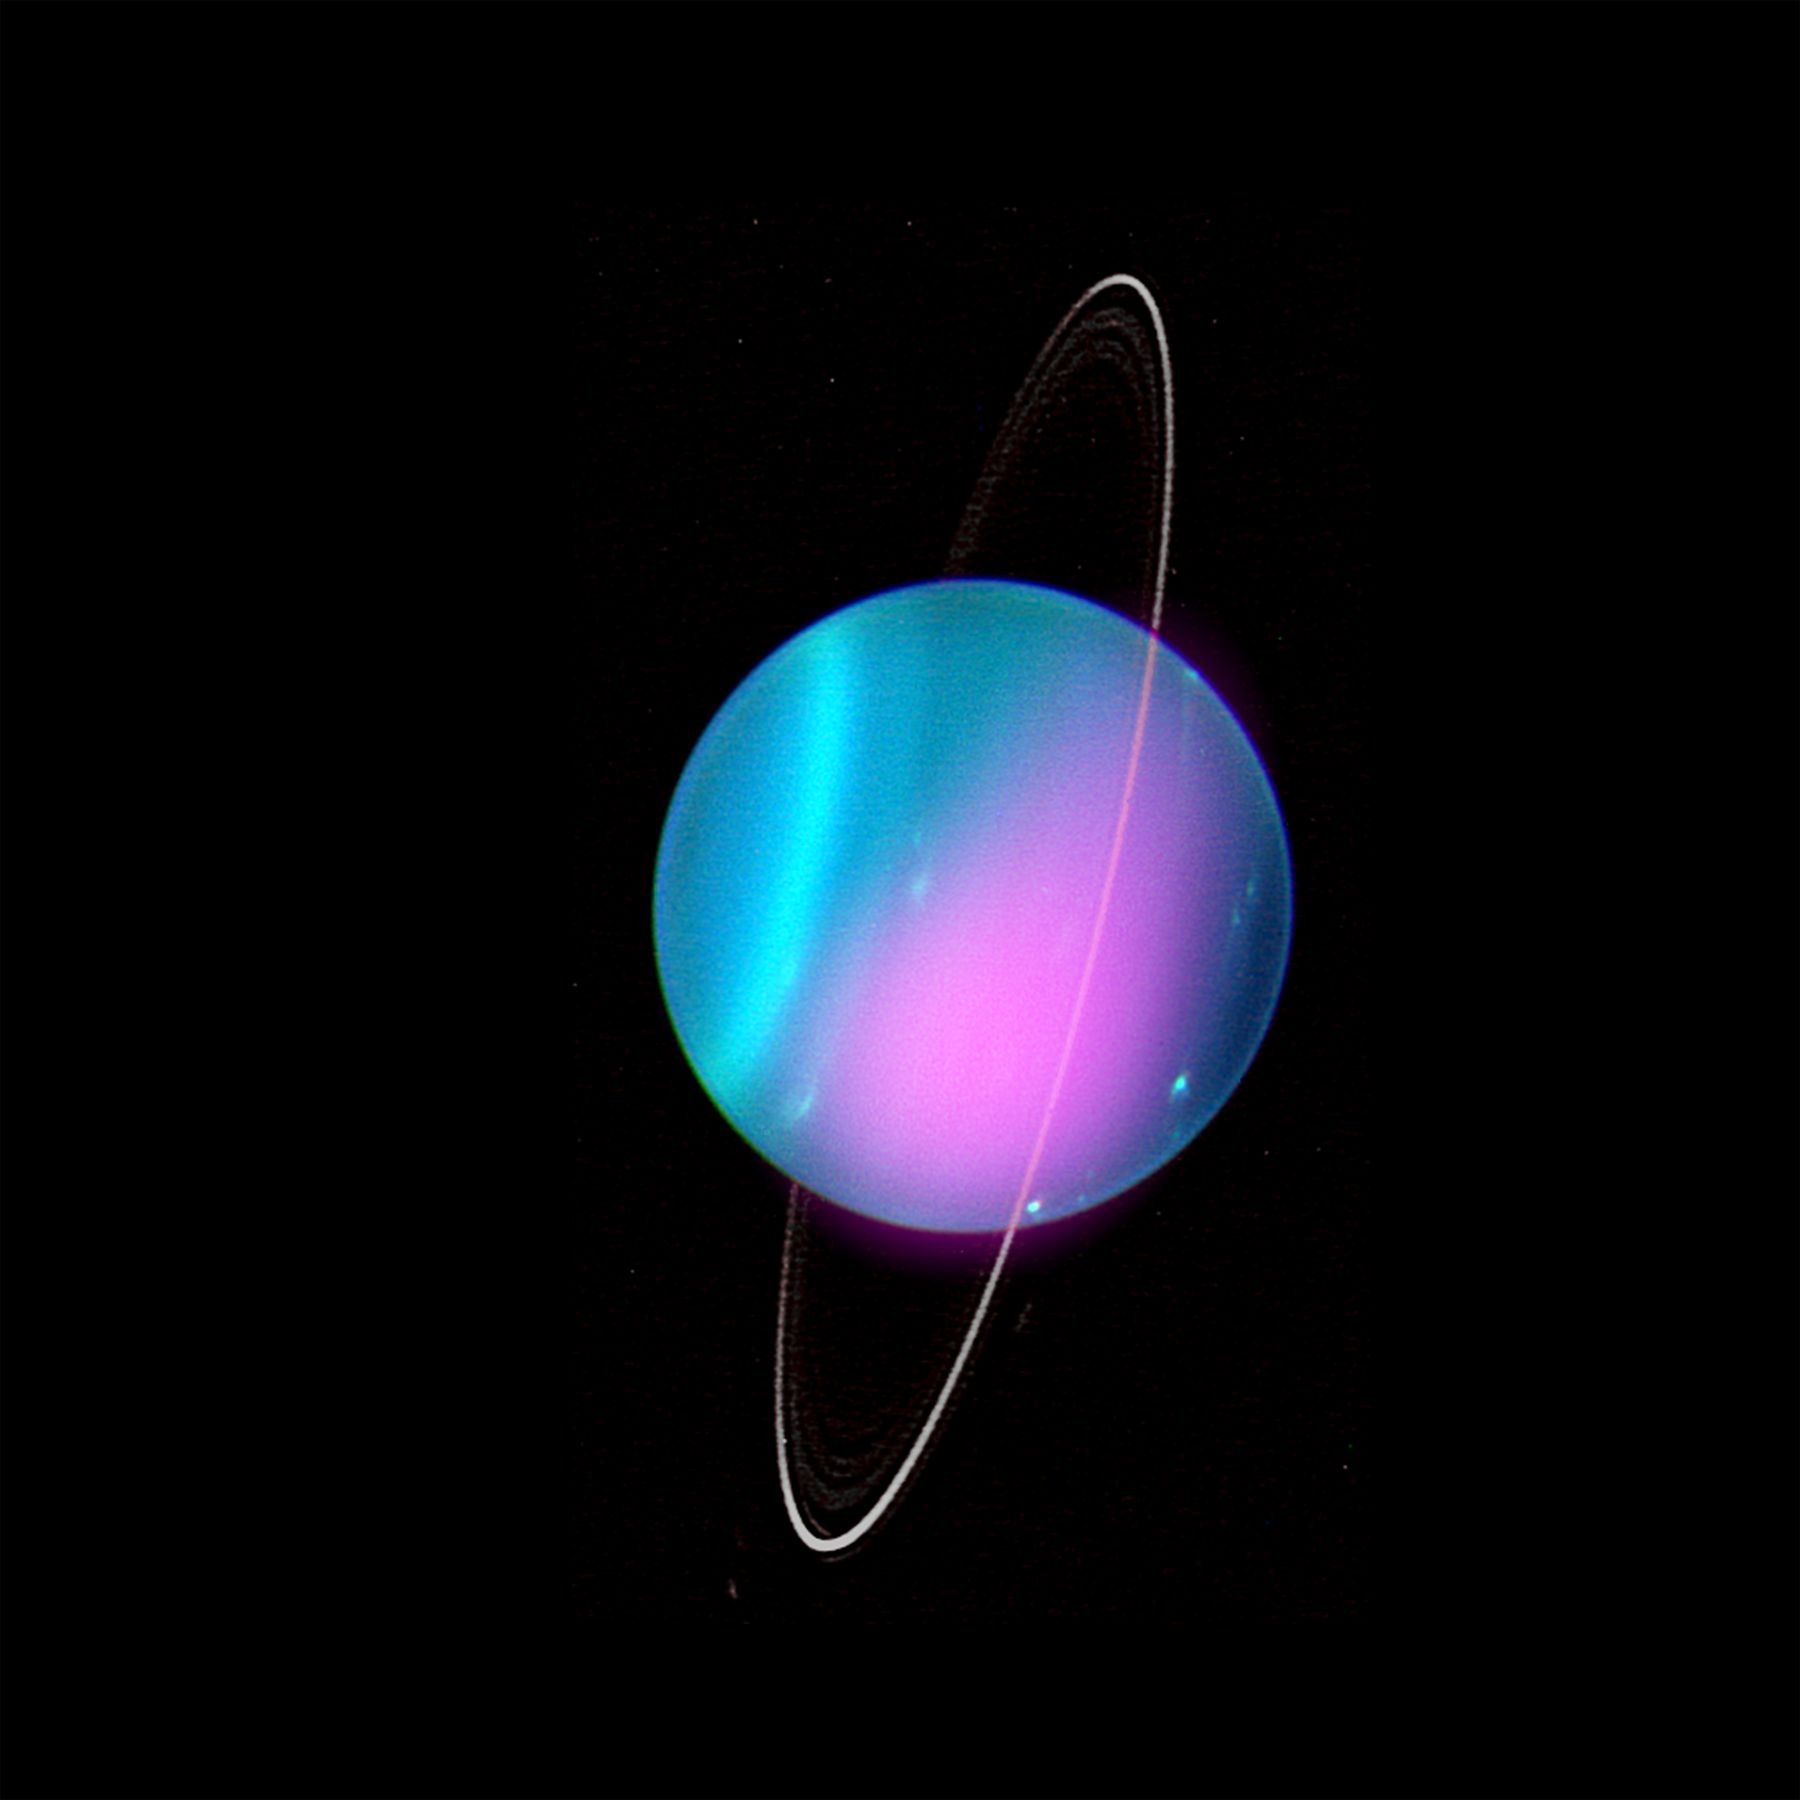 นักดาราศาสตร์พบการแผ่รังสีเอกซ์จากดาวยูเรนัสเป็นครั้งแรก